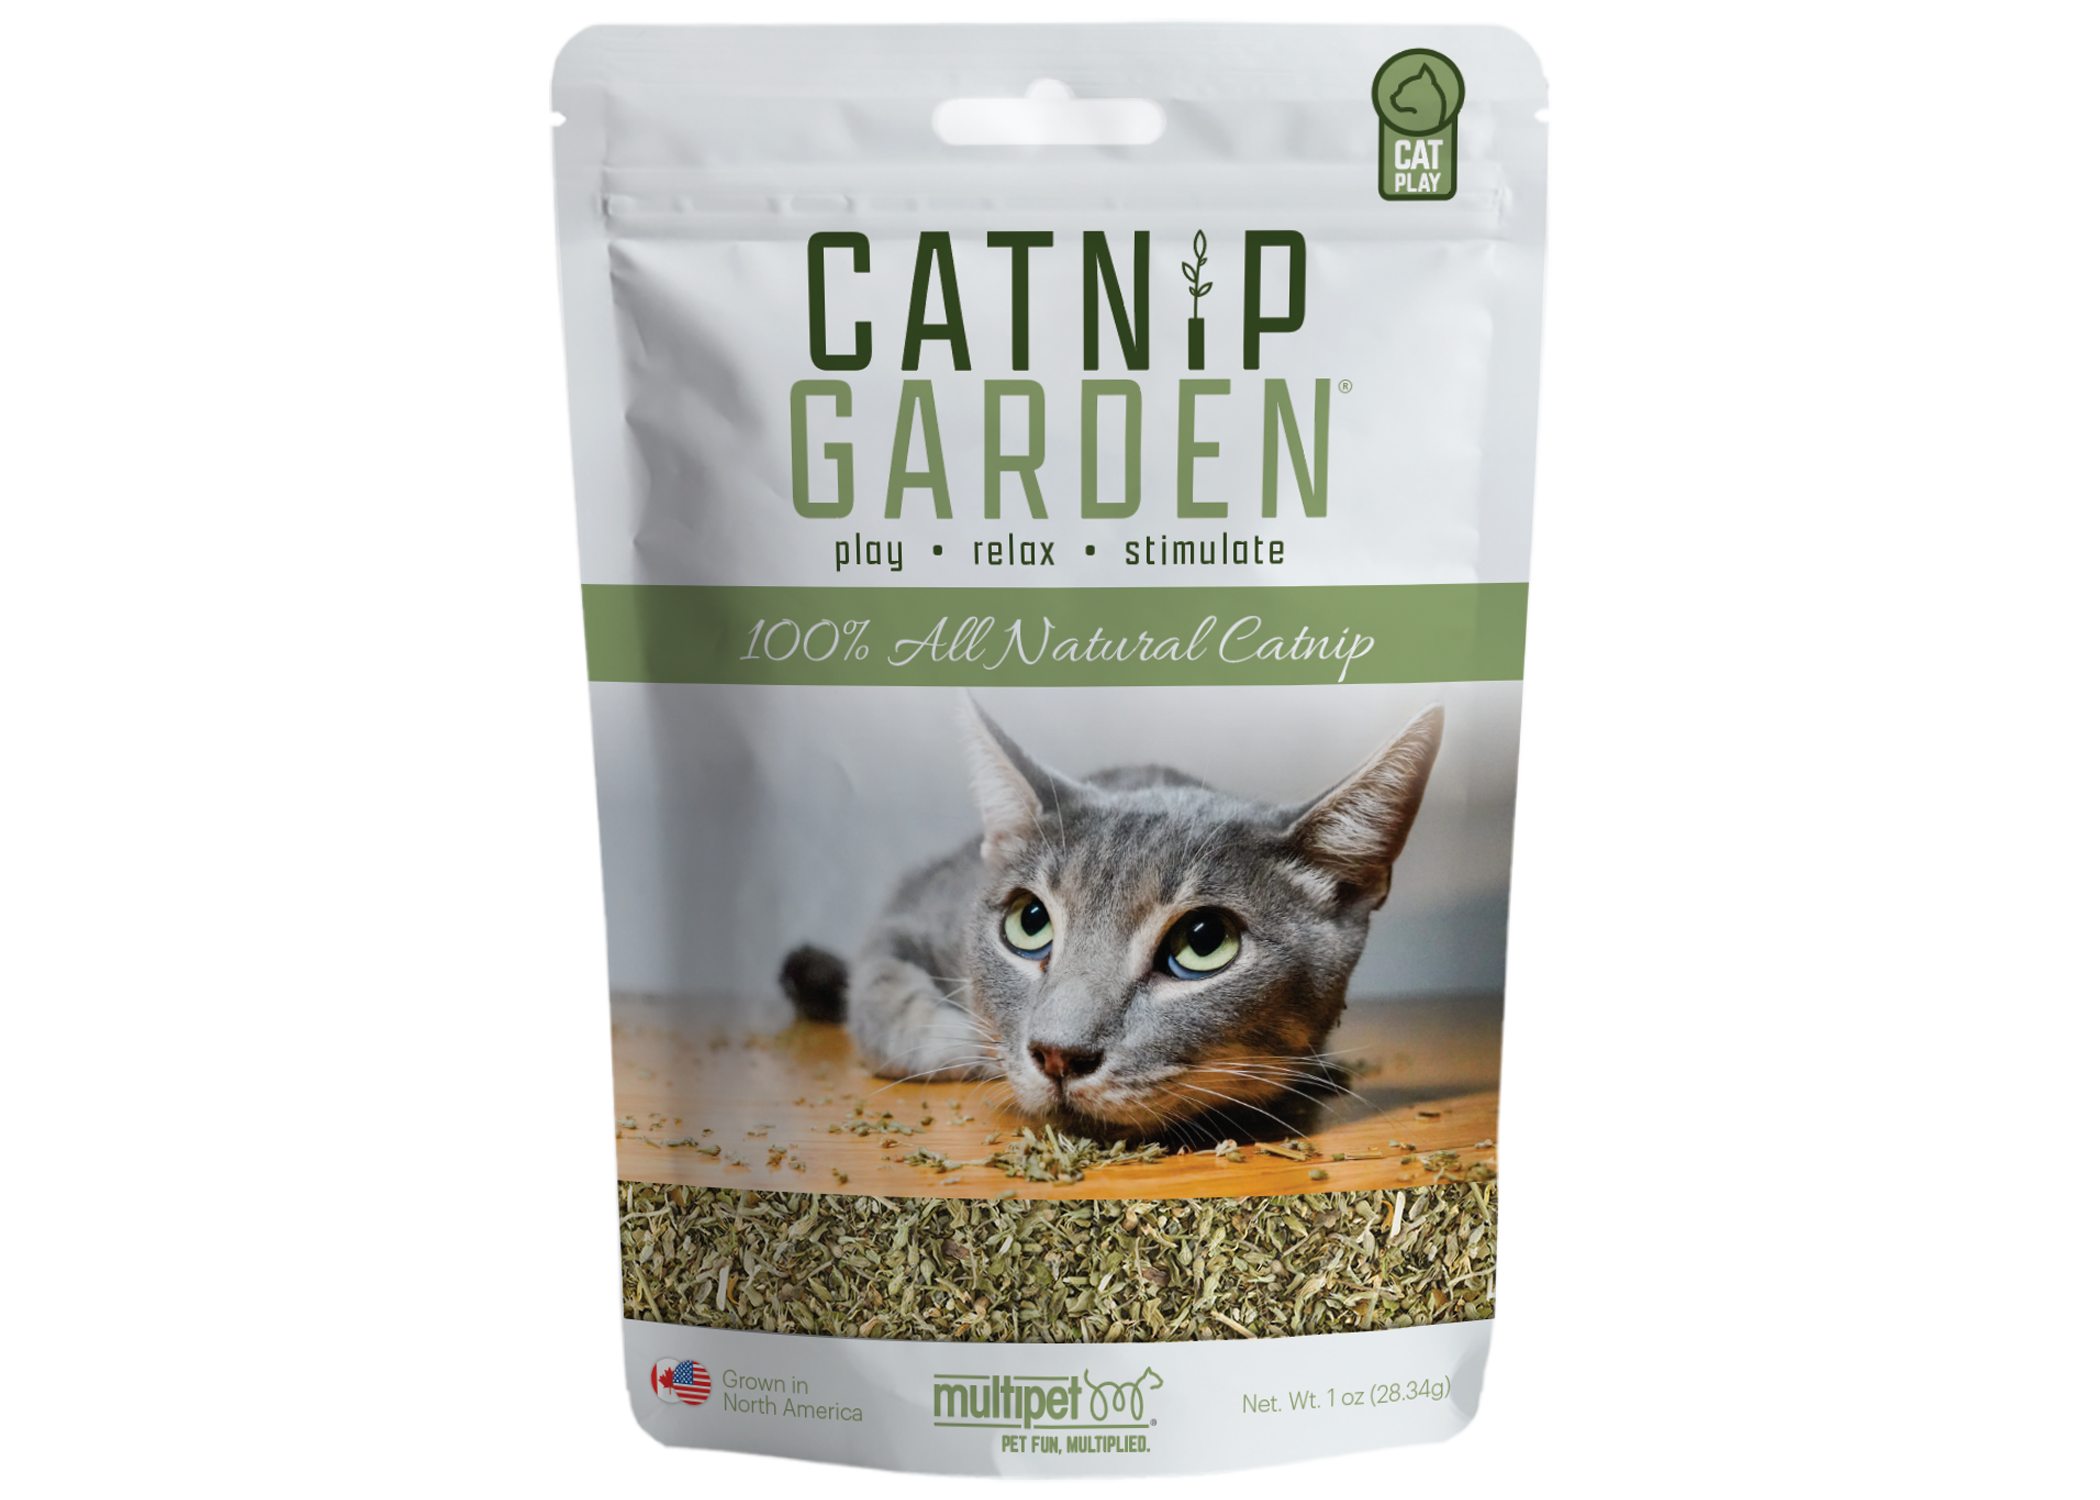 Catnip garden® herbe à chat naturelle en sachet — Boutiques d'animaux Chico